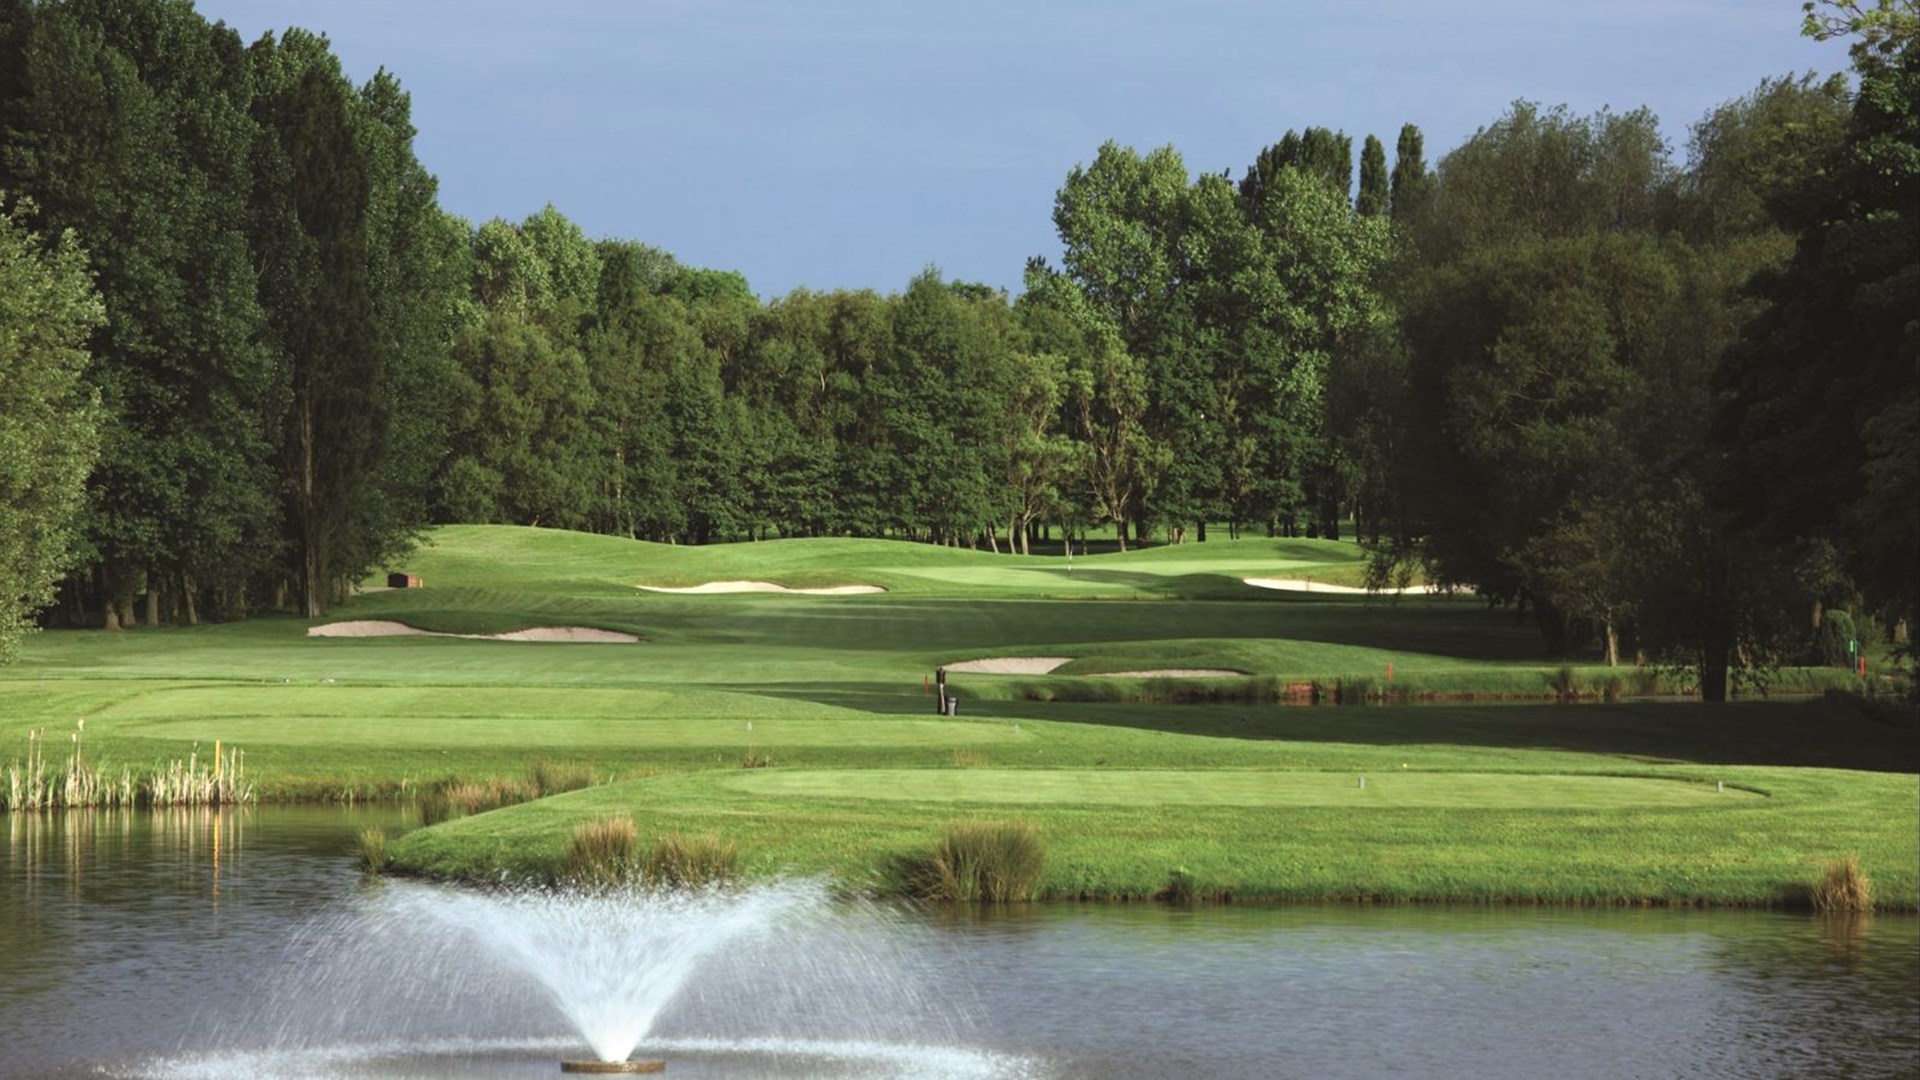 The Brabazon Golf Course